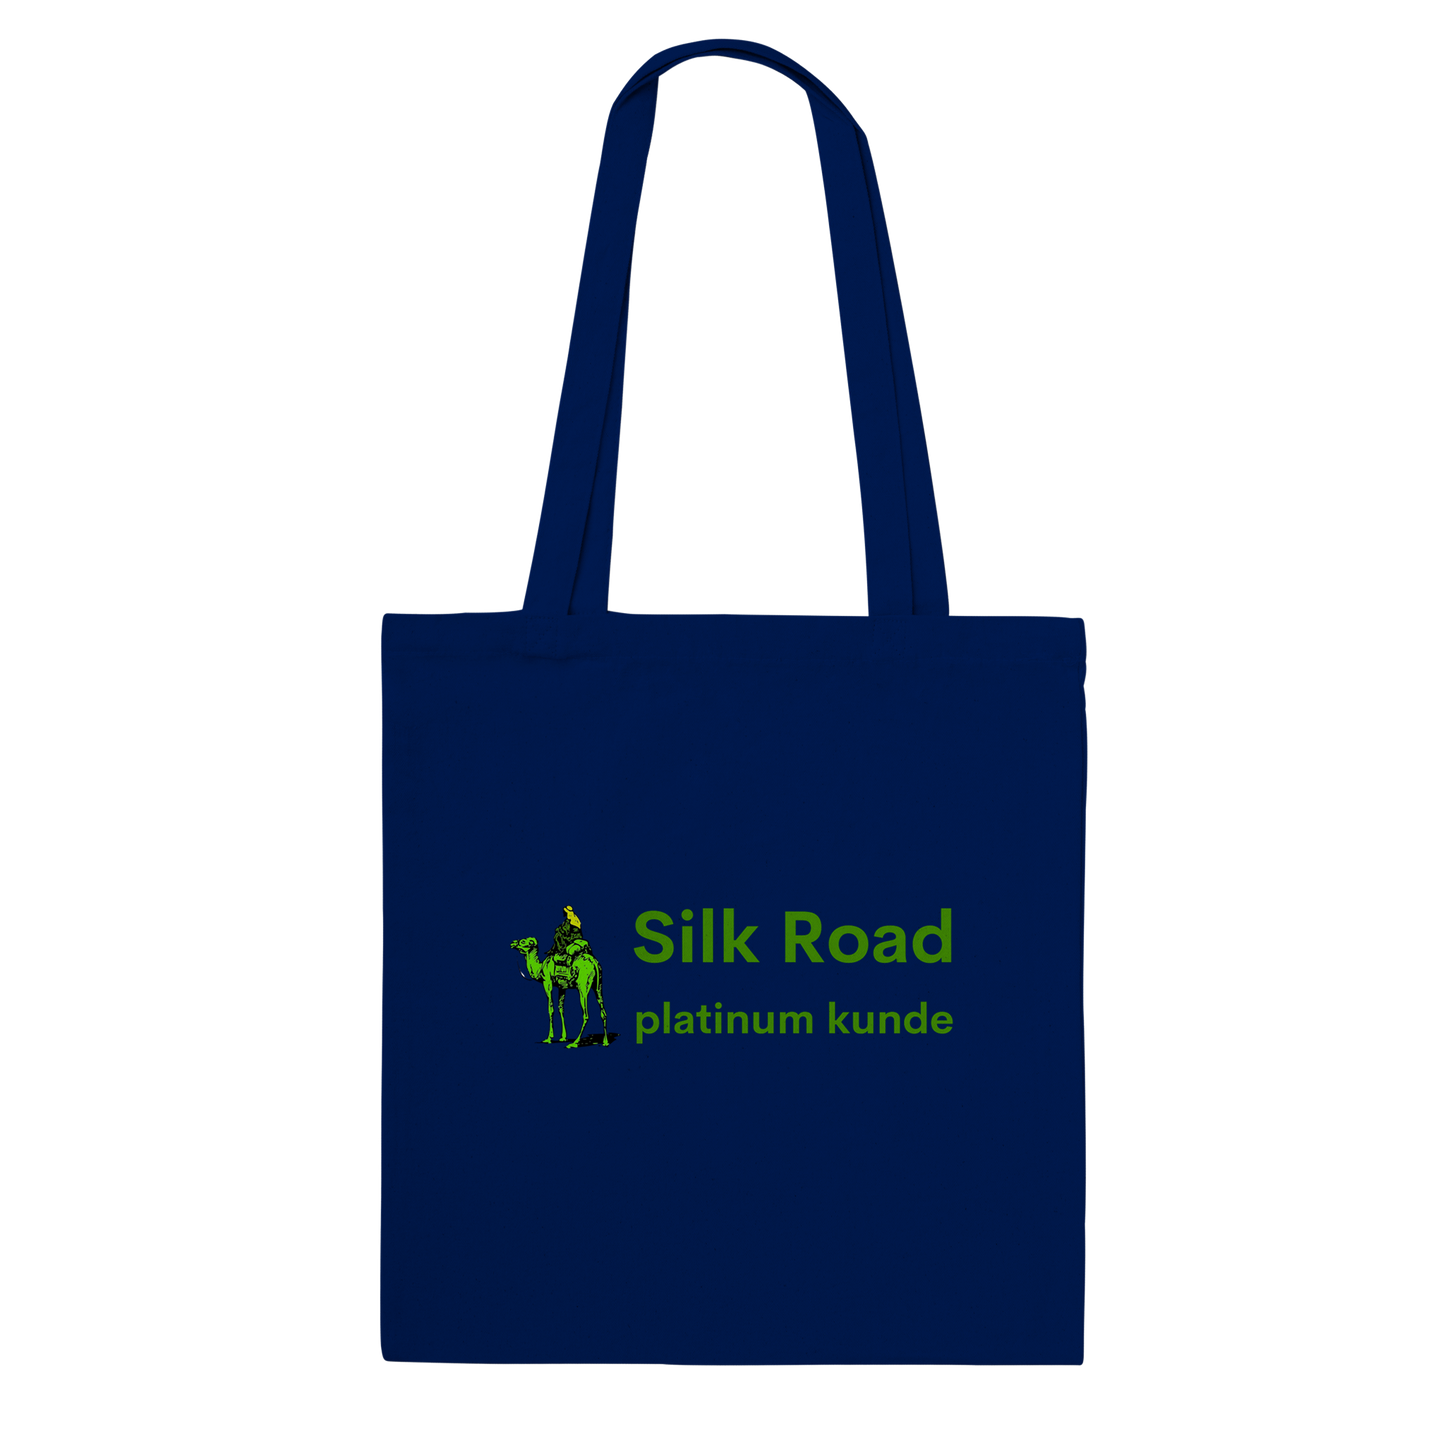 Silk Road Platinum Kunde Tote Bag